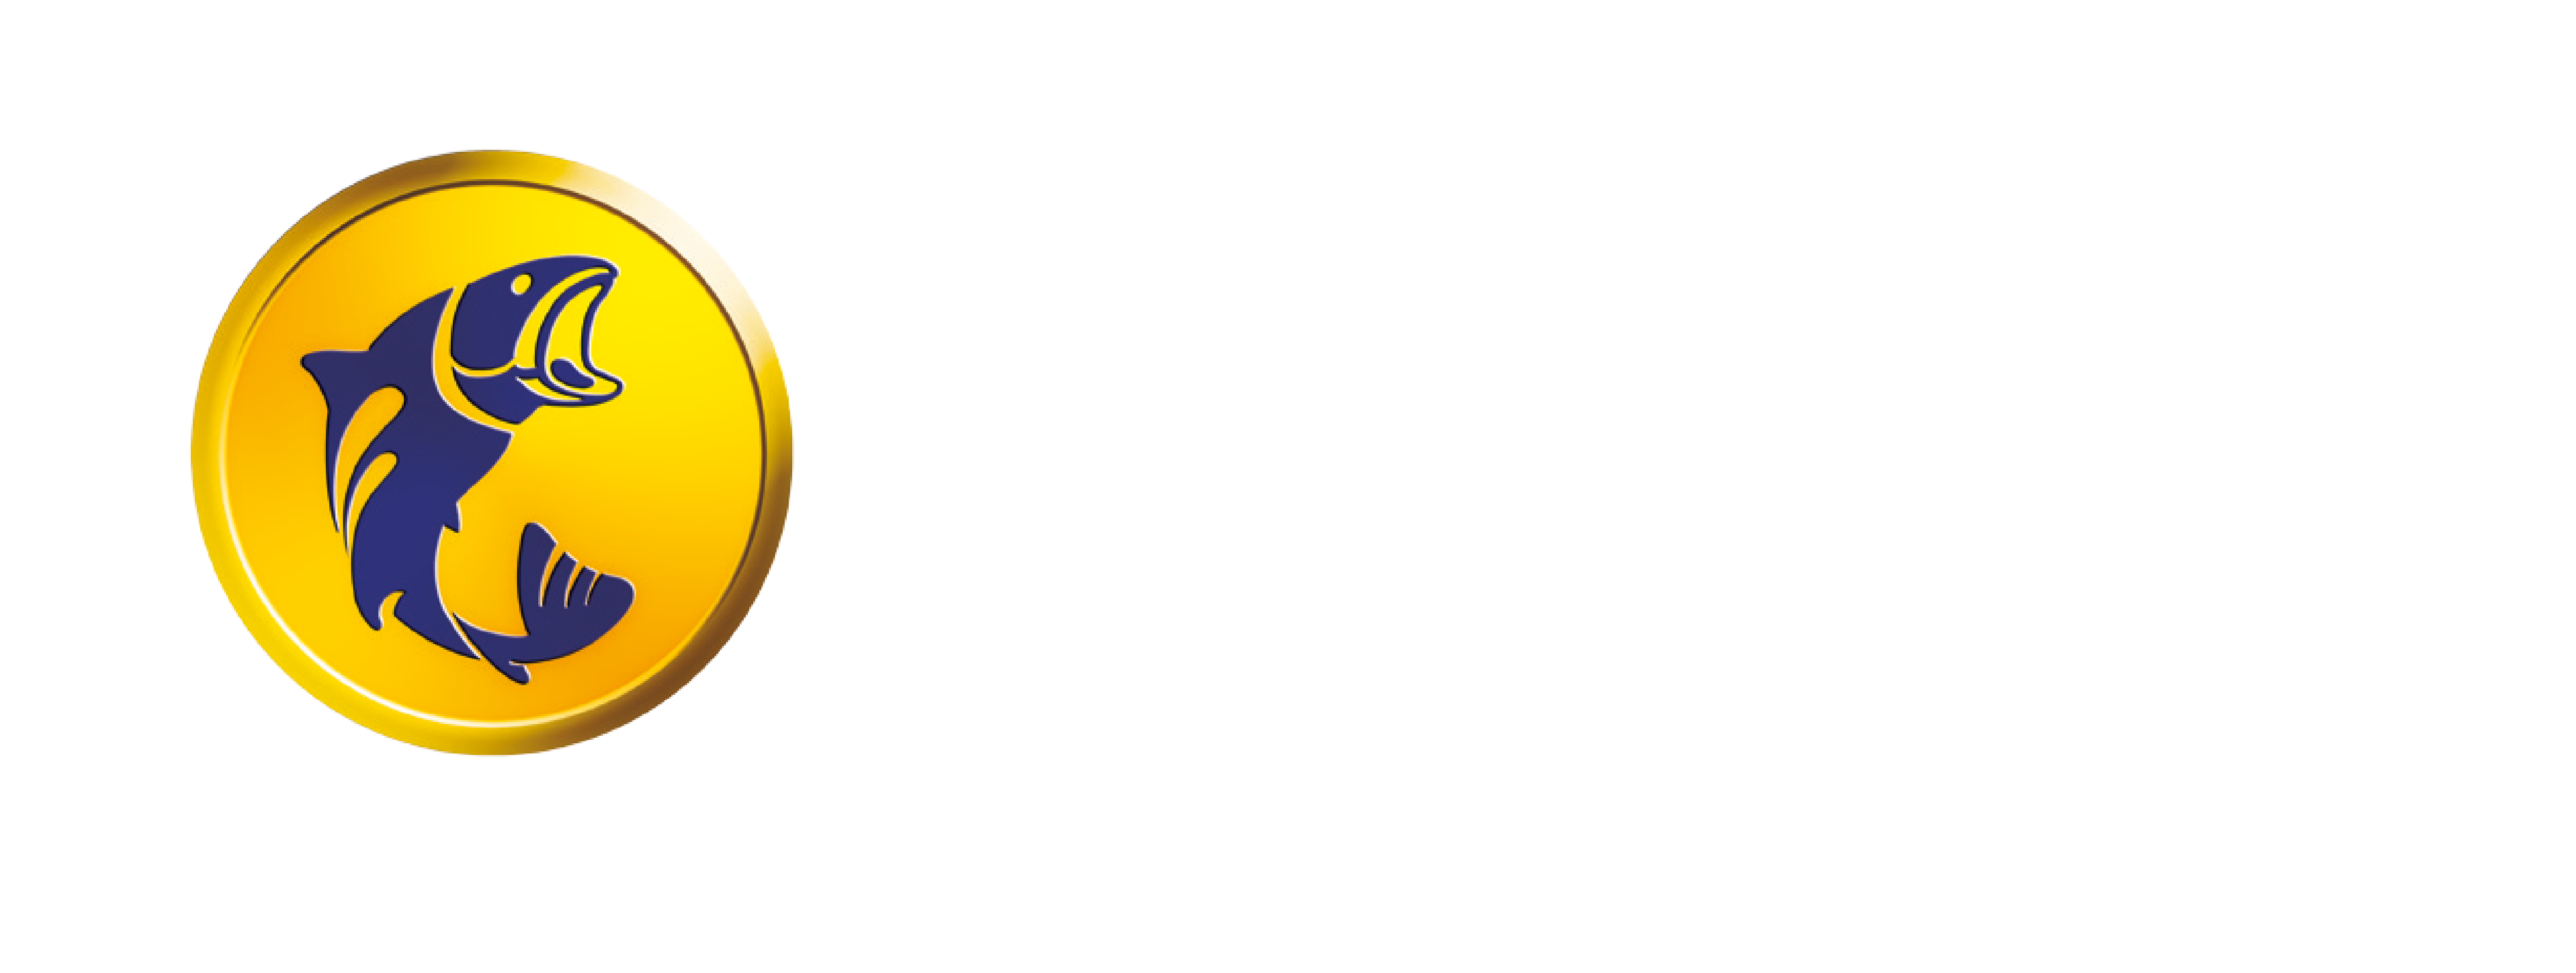 BanCo. El Banco de Corrientes